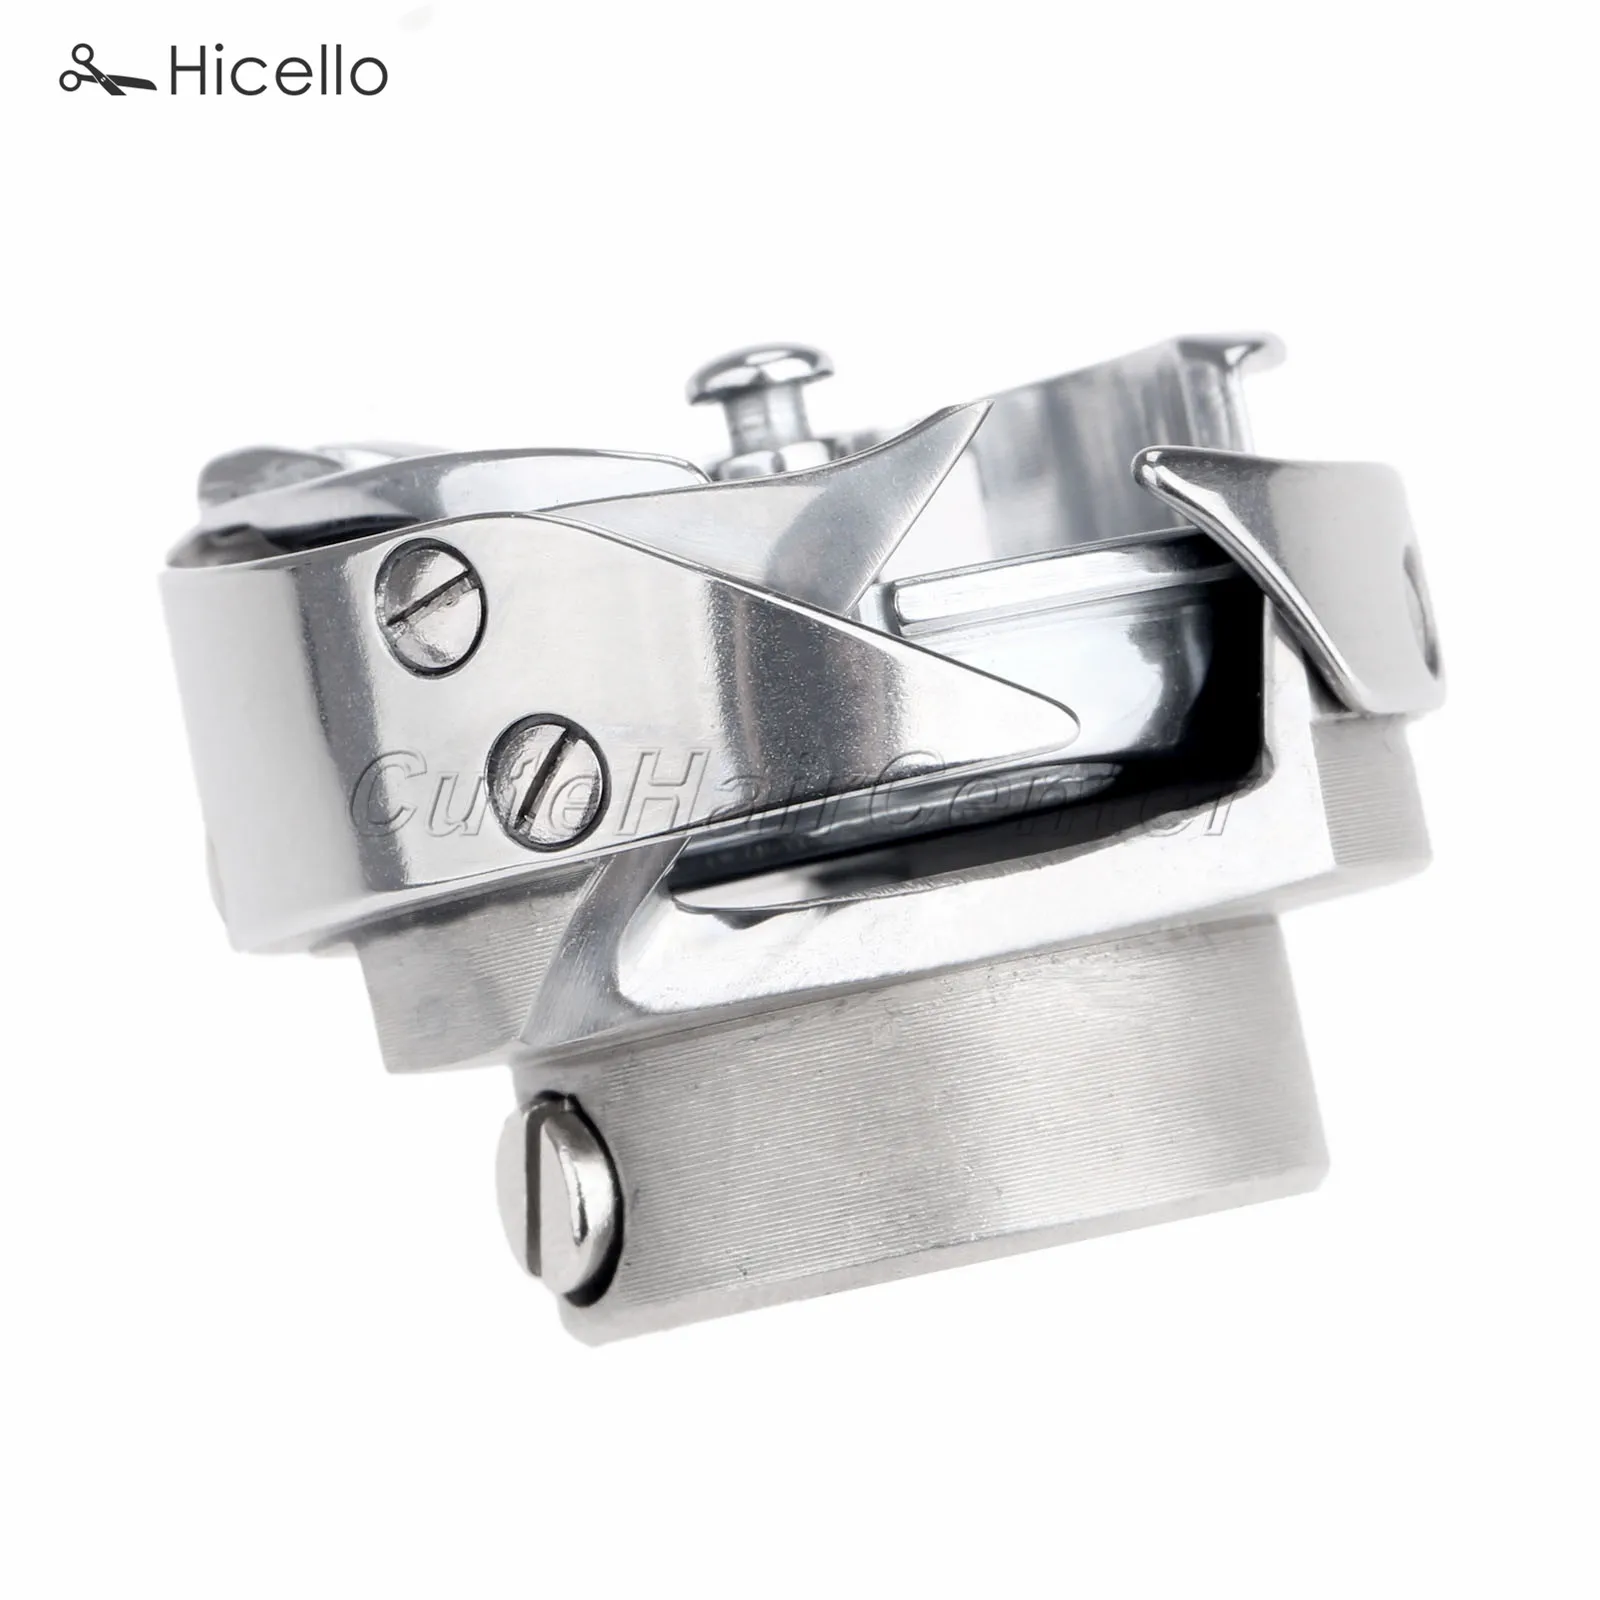 HSH-7.94B hirose роторный крюк швейная машина автоматическая резьба подтриммеры Певица Стиль одной иглы промышленные Hicello